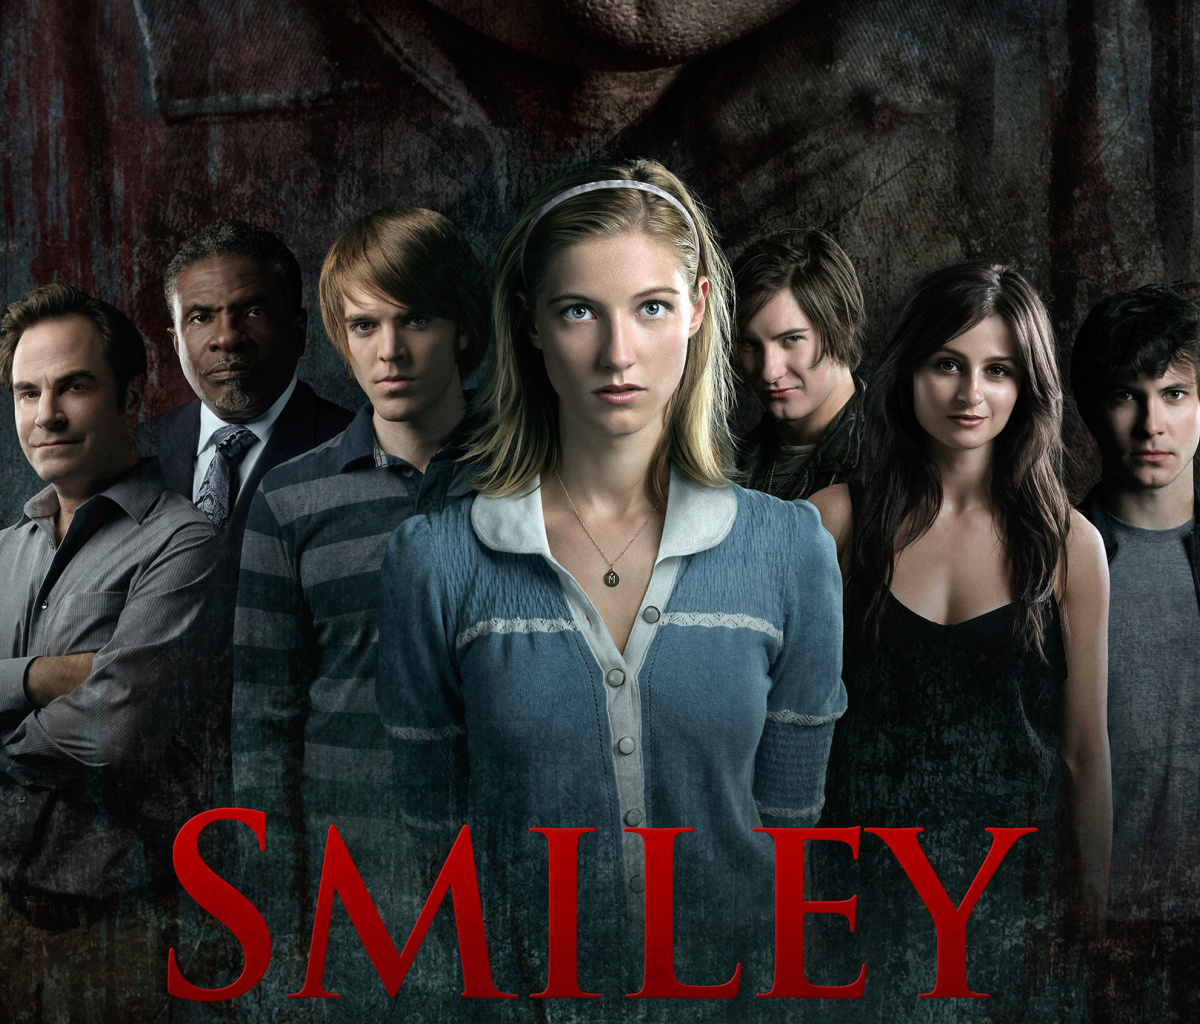 Smiley Horror Film wallpaper 1200x1024